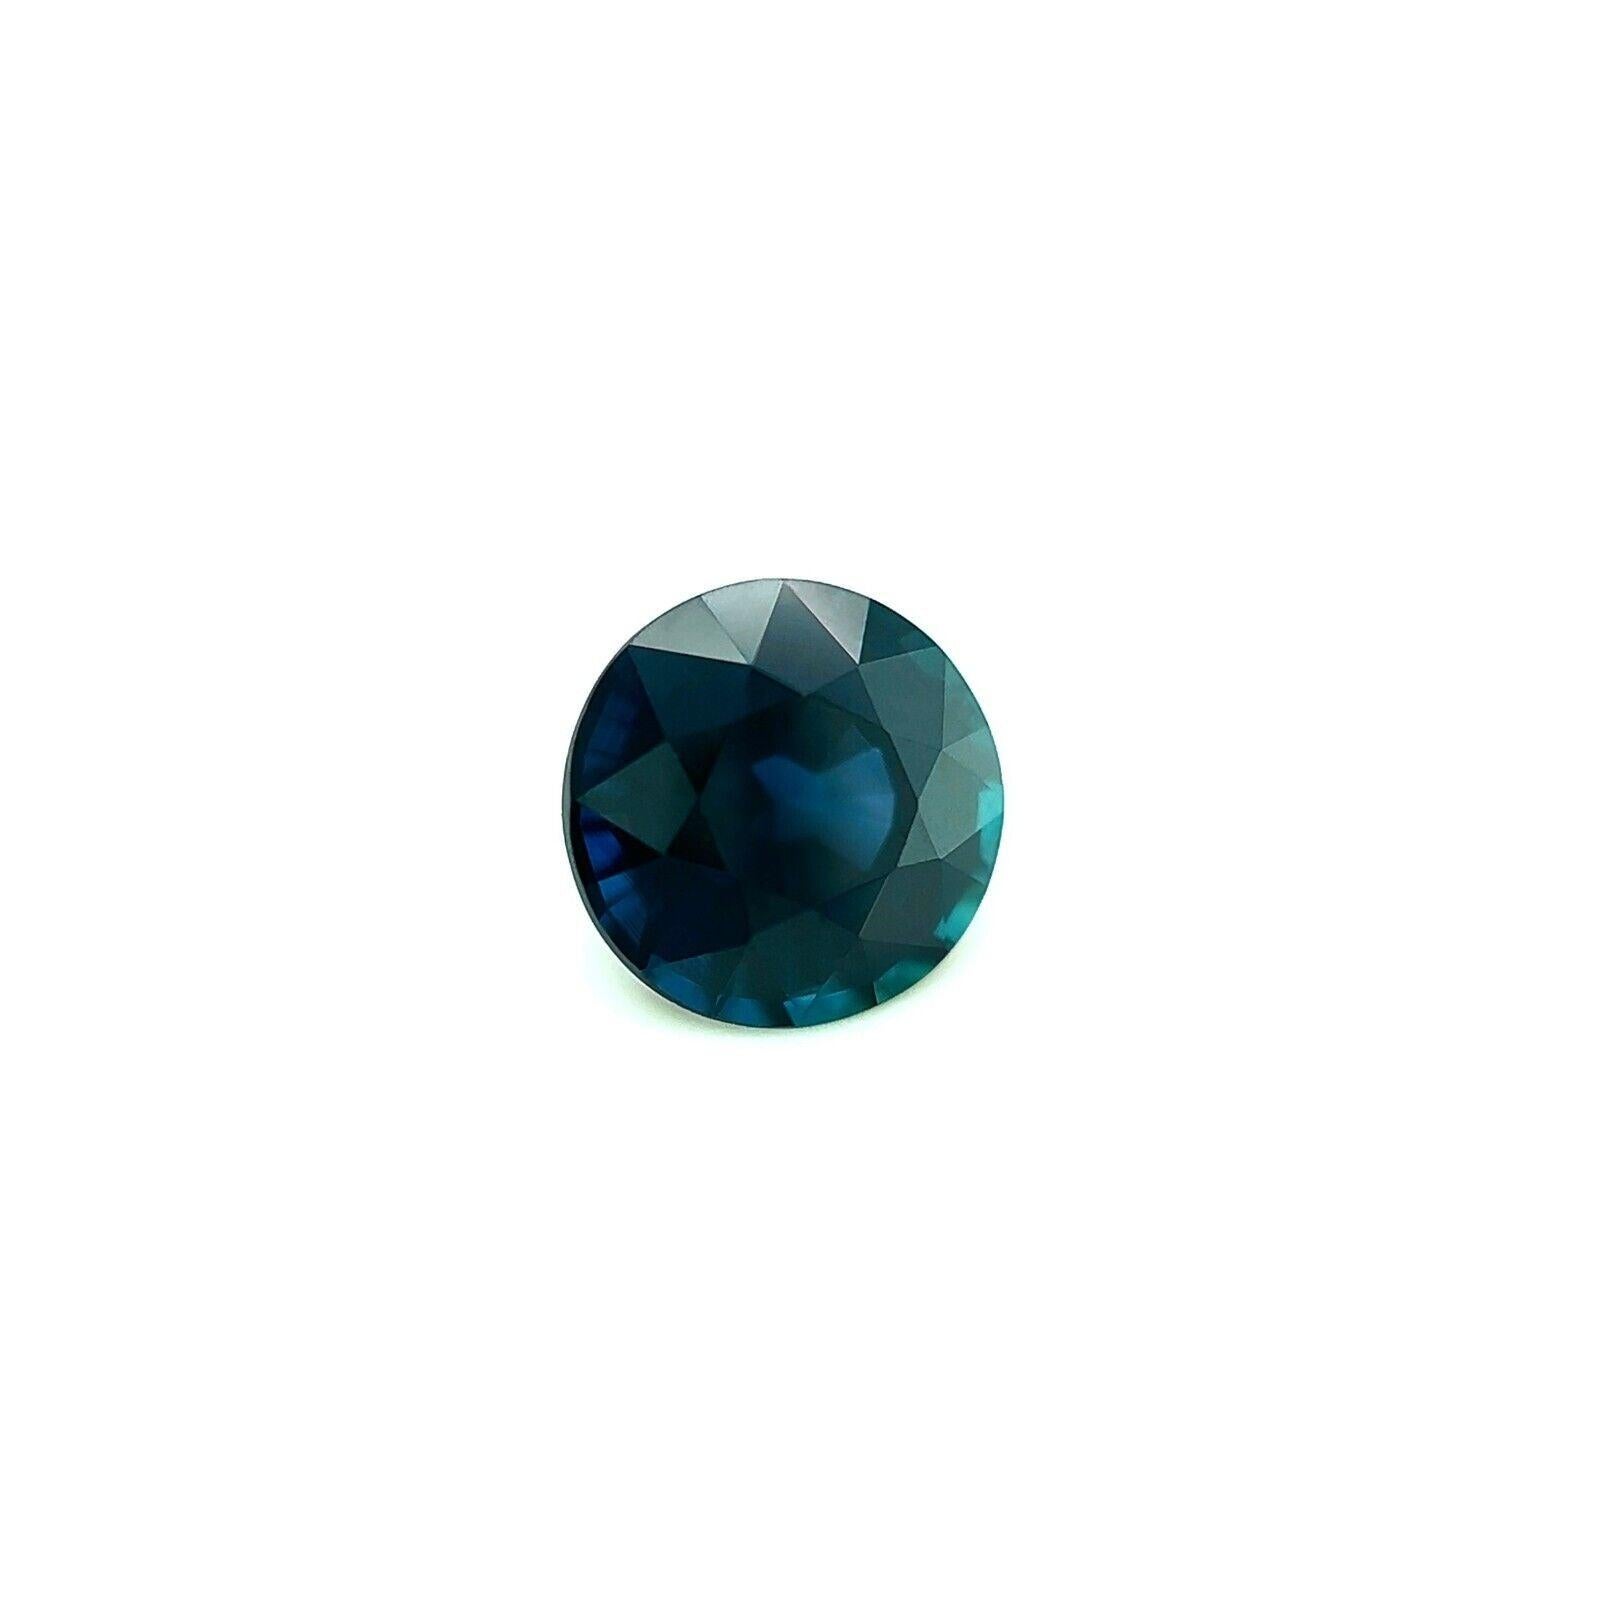 Saphir naturel de Ceylan bleu profond taille ronde non serti de 1,19 carat, pierre précieuse rare VVS
 
 Saphir de Ceylan naturel d'un bleu profond.
 1,19 carat d'une belle couleur bleu foncé et d'une excellente clarté. Pierre très propre. VVS.
 Il